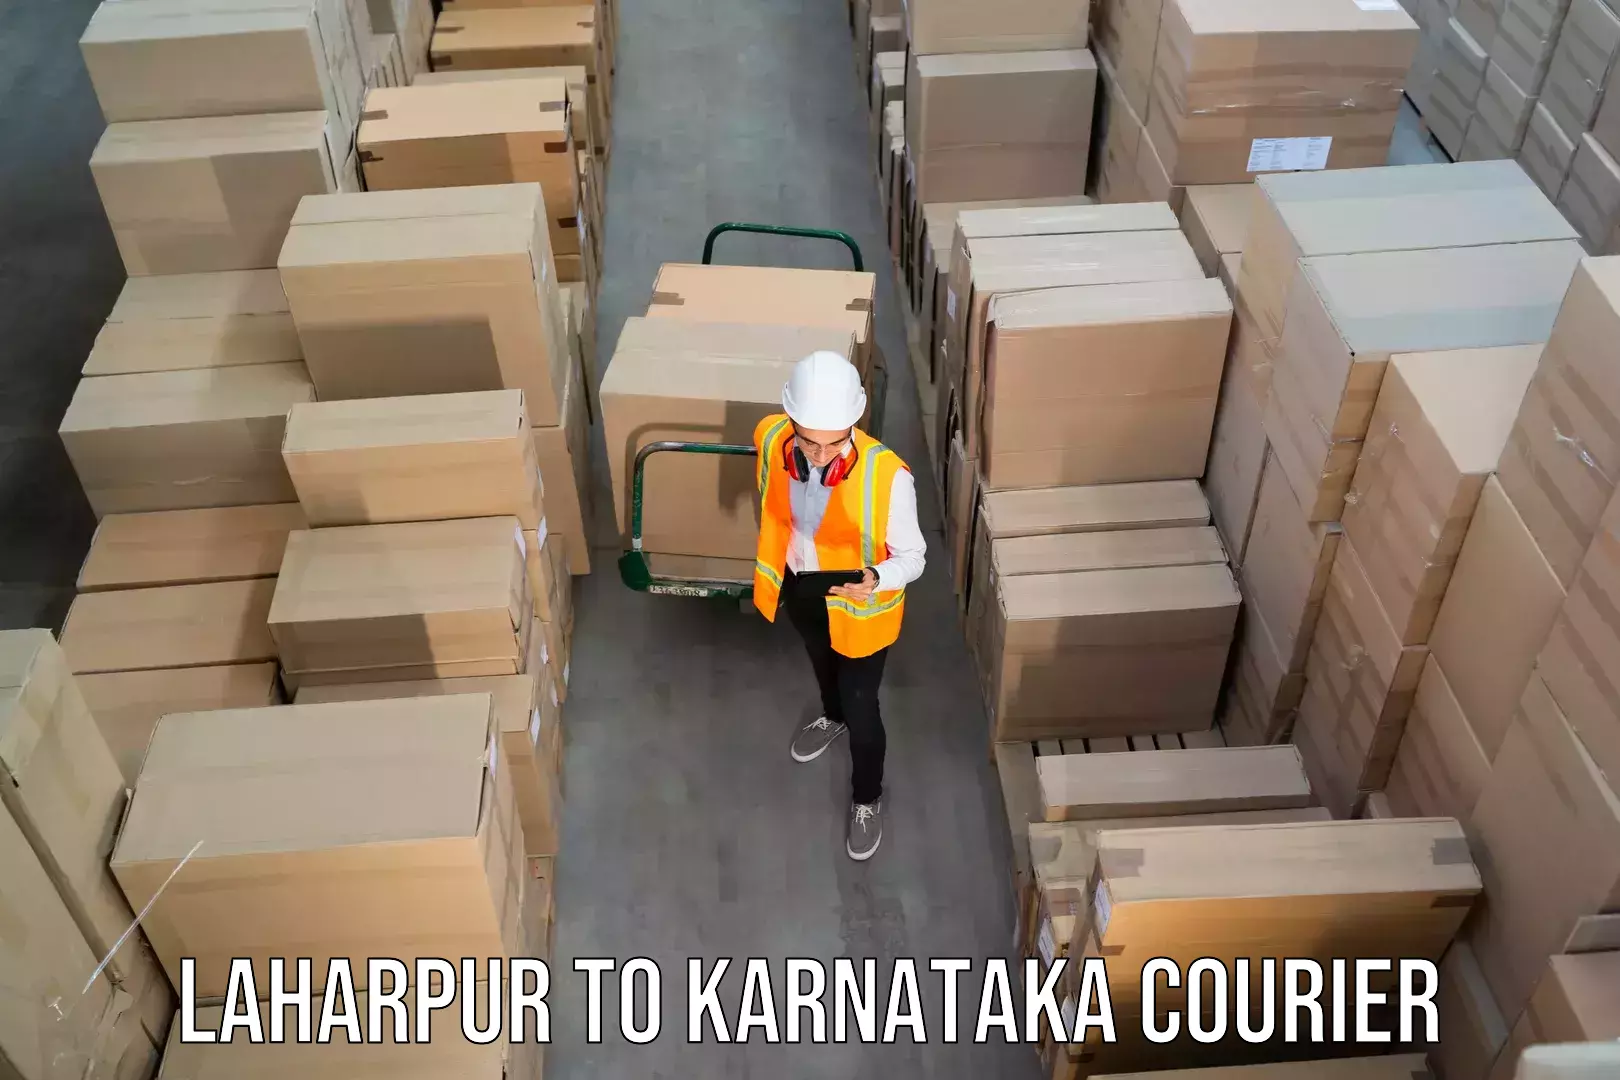 Efficient parcel service Laharpur to Kodagu